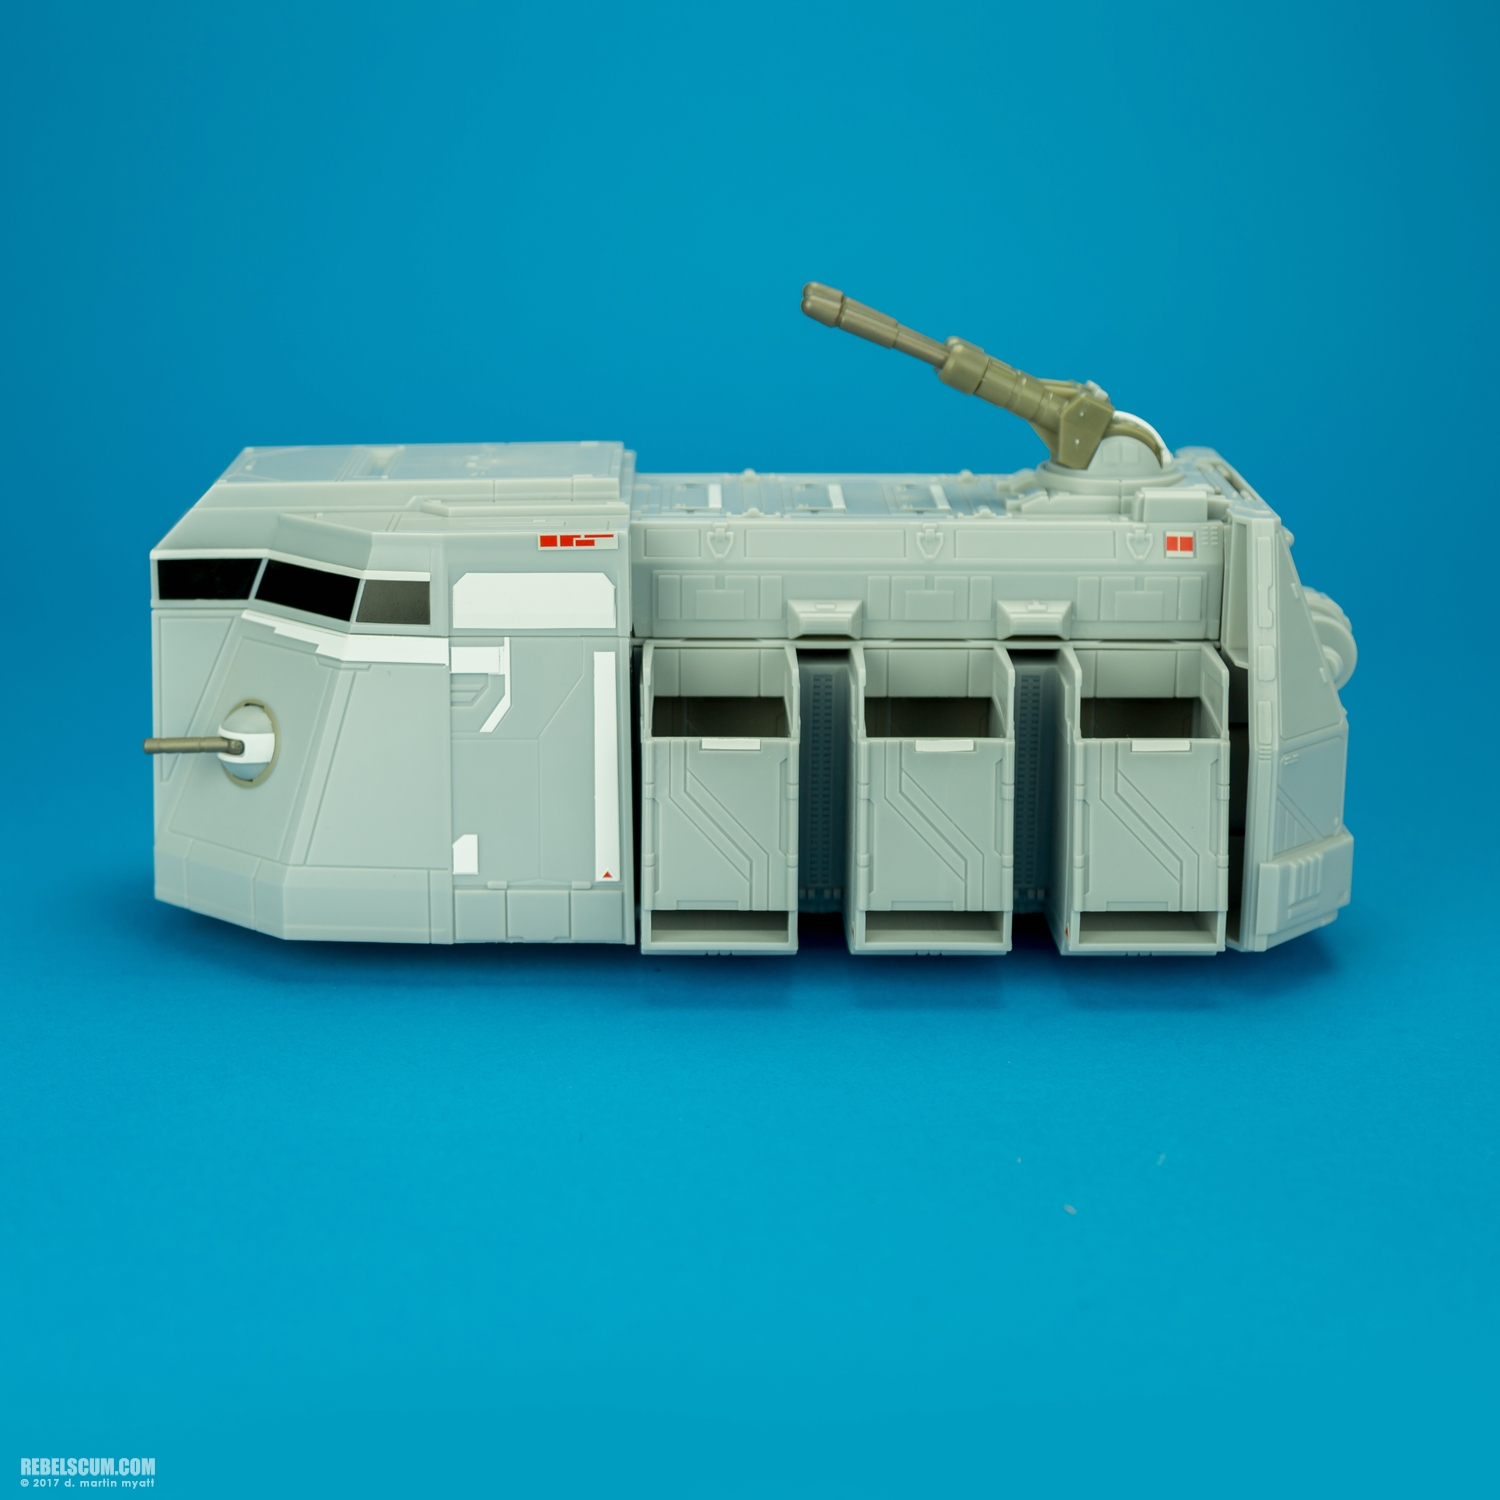 Imperial-Troop-Transport-Star-Wars-Rebels-Vehicle-Hasbro-003.jpg